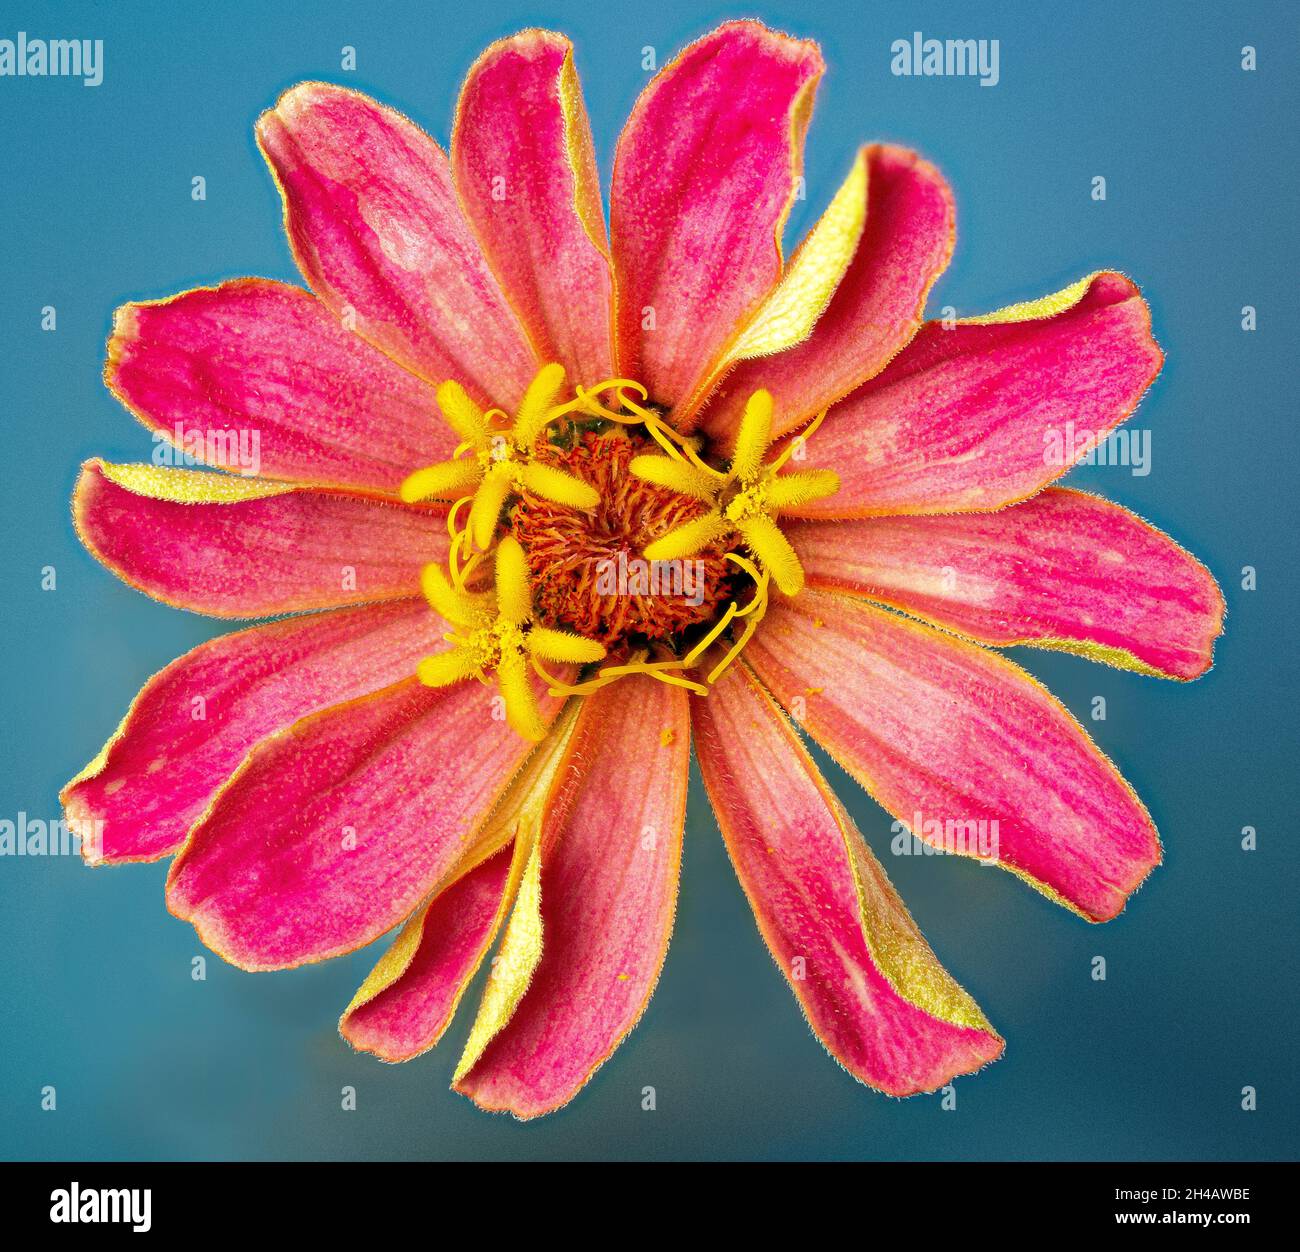 Vue macro du centre de la fleur rose de zinnia, montrant trois fleurs de disque à 5 lobes et des fleurs de rayon de stigmate plus petites et plus minces sous elles. Banque D'Images